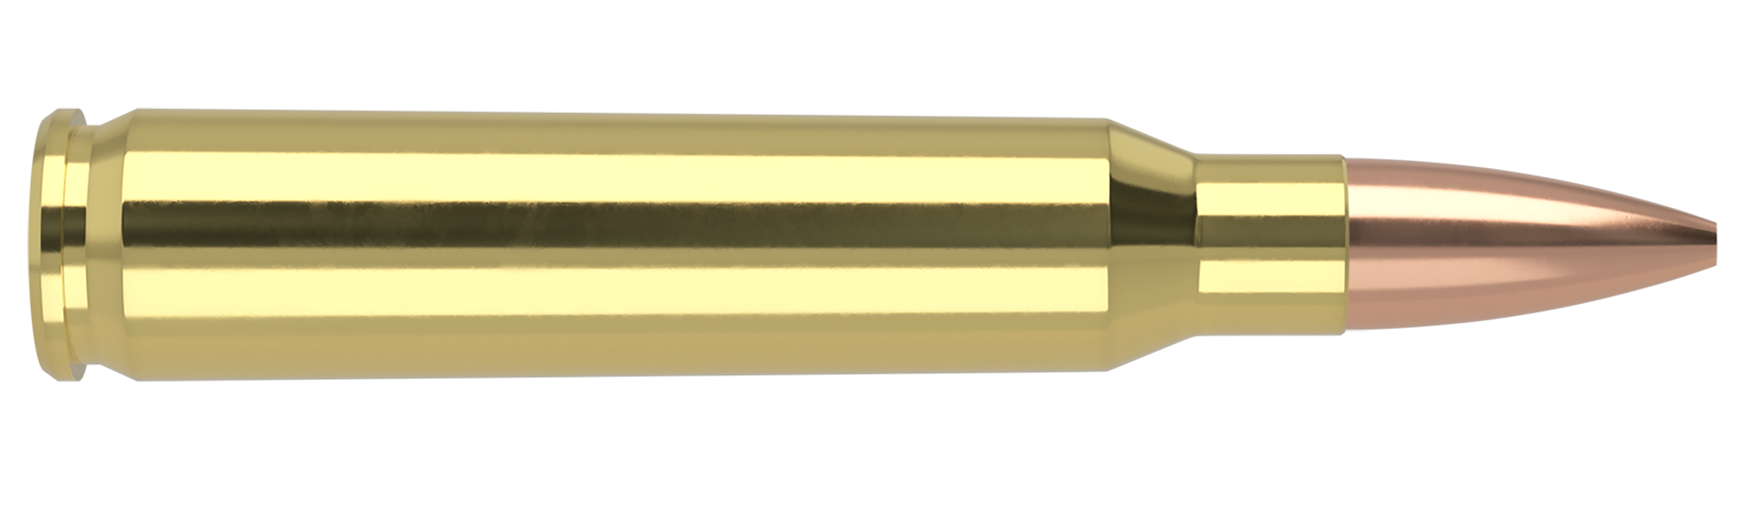 Nosler 223 Rem Unprimed Brass - 250/pk - Rangeview Sports Canada